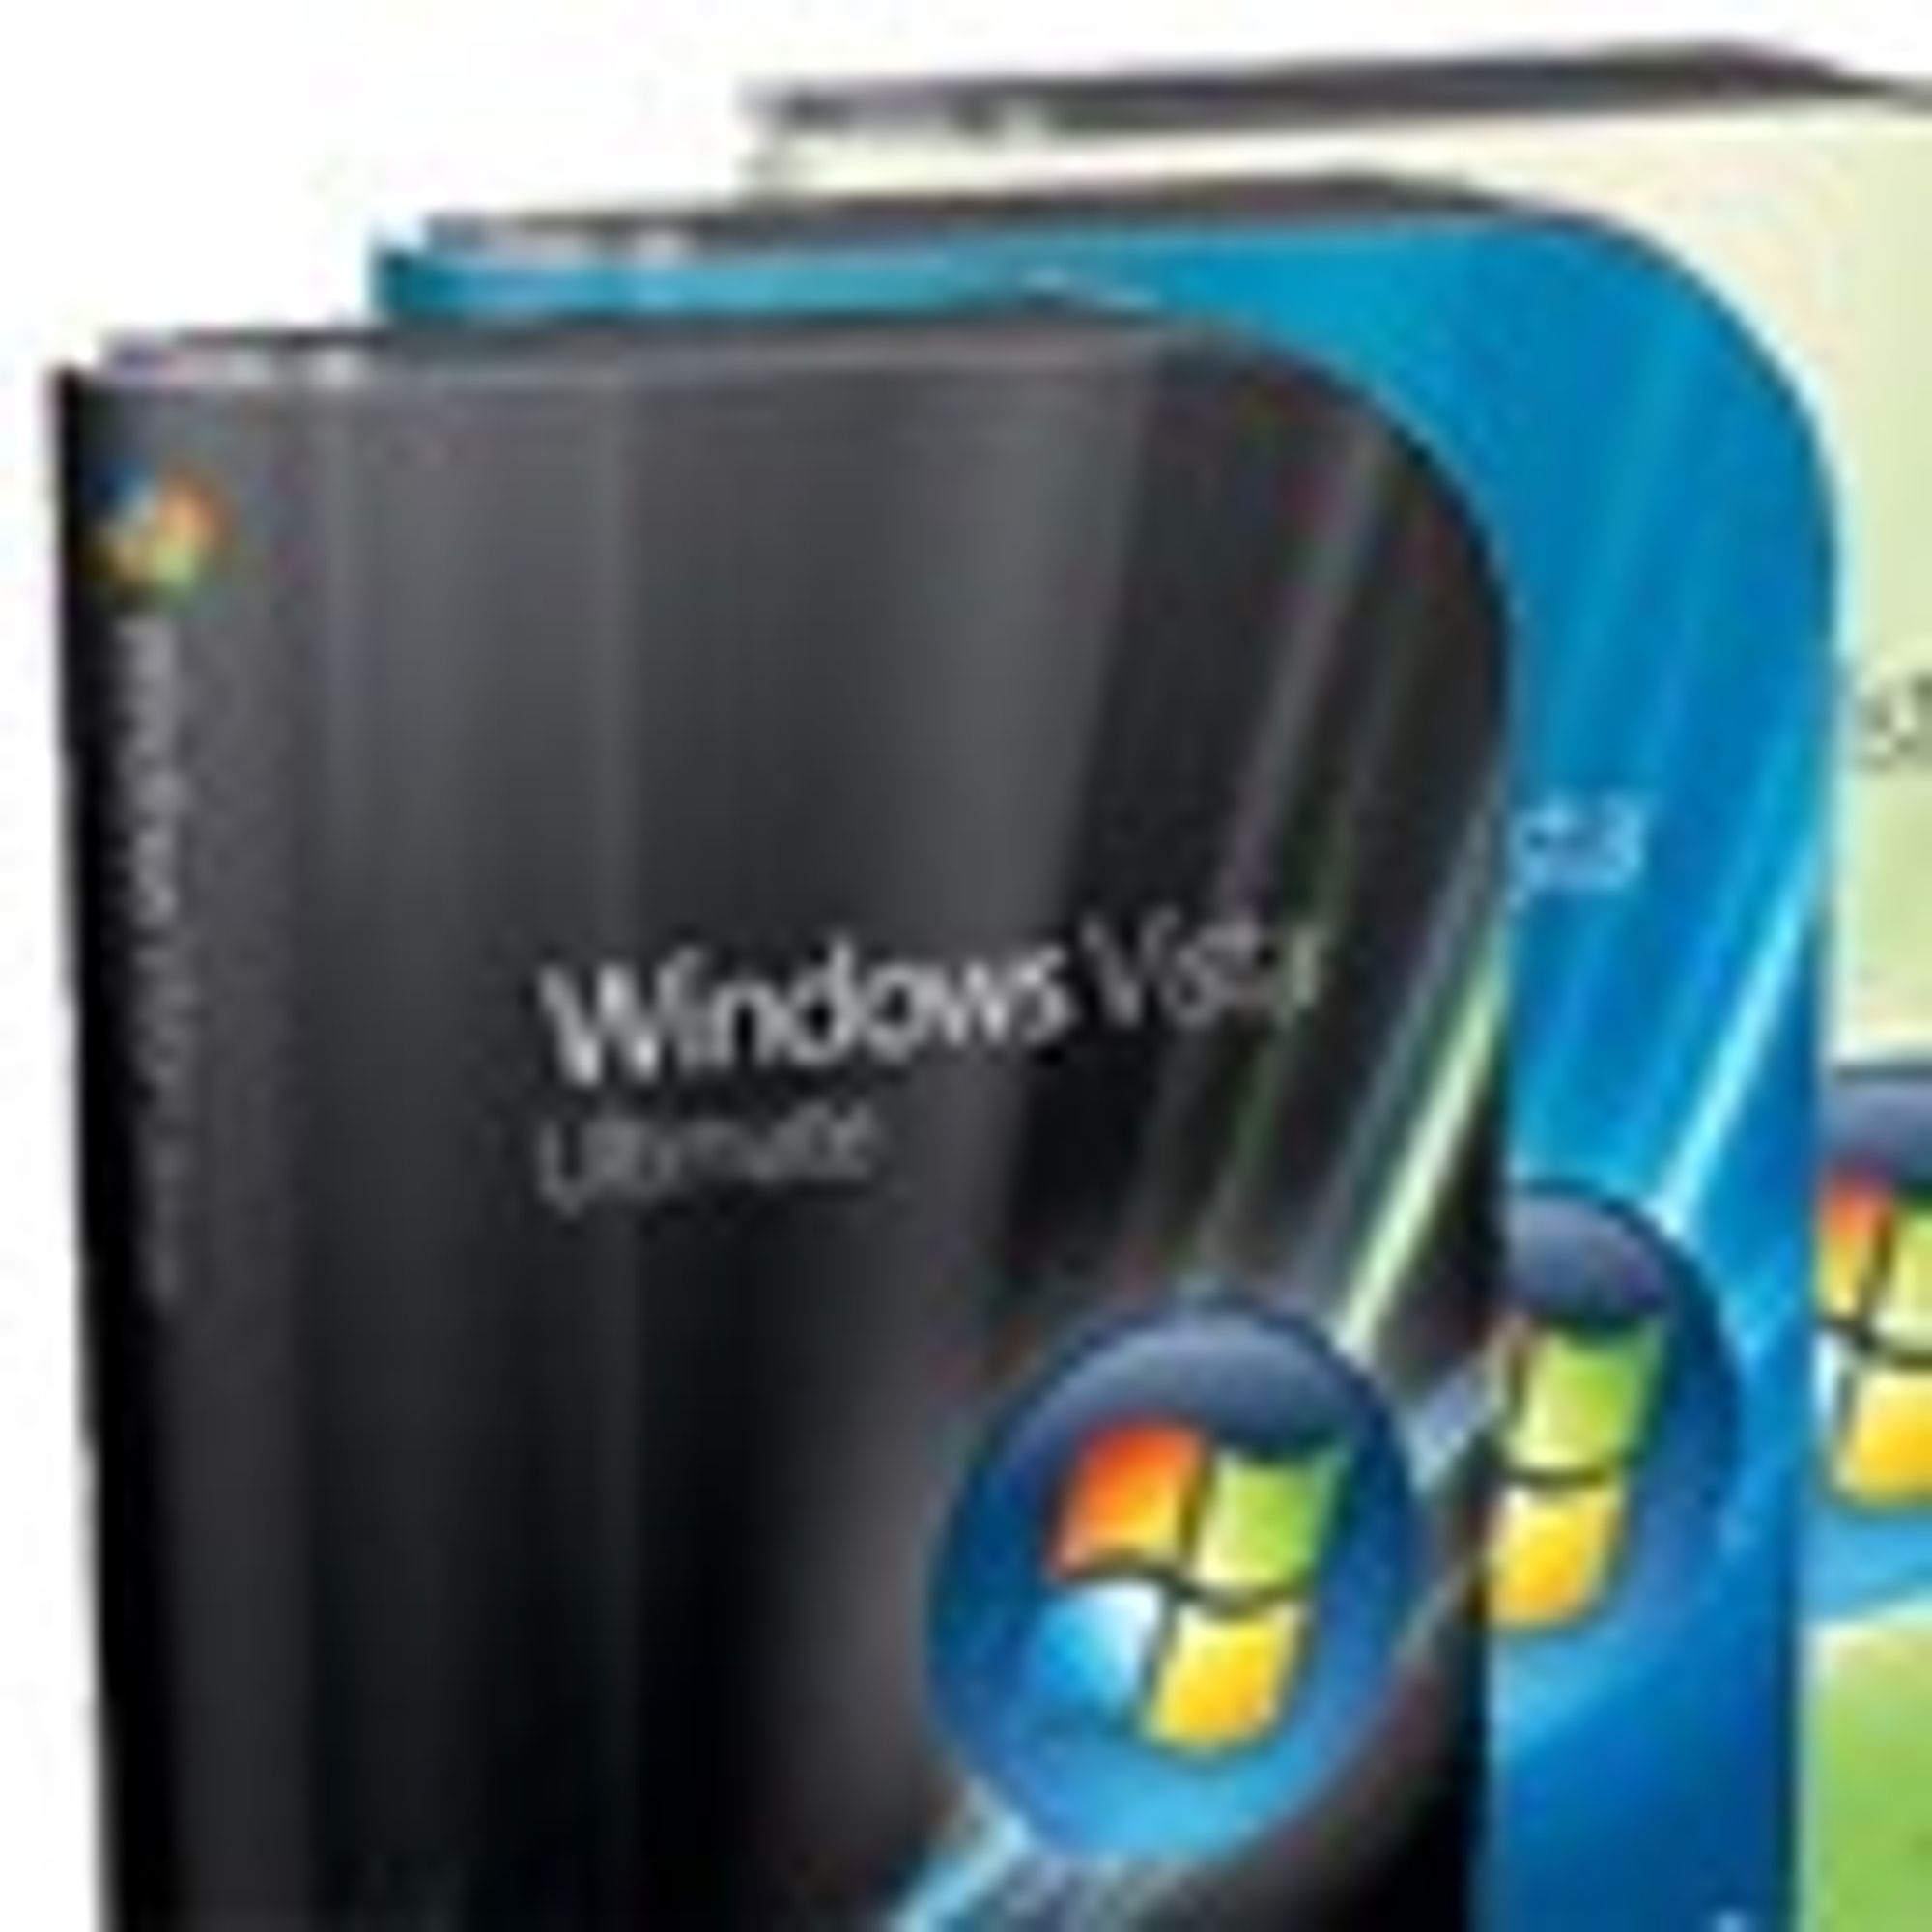 Billigere Windows Vista på boks